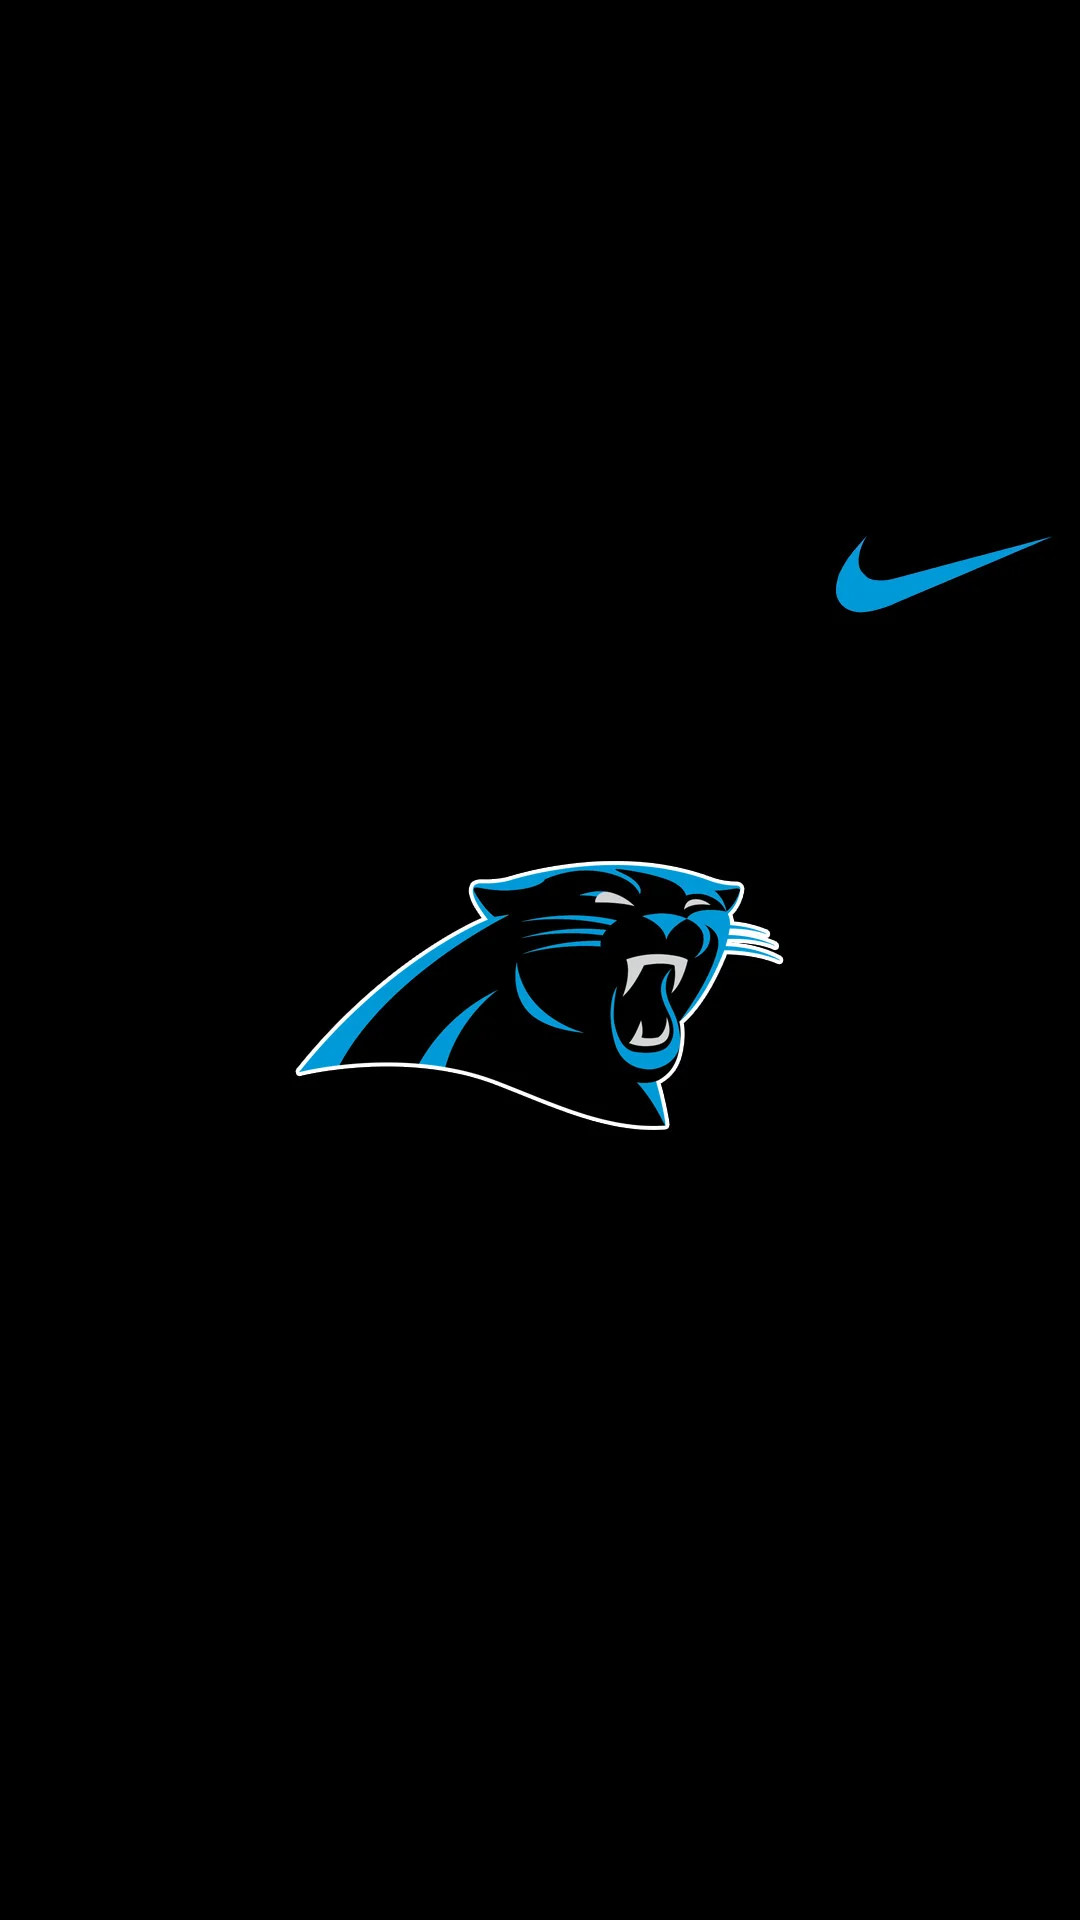 Carolina Panthers Nike Background for Iphone.